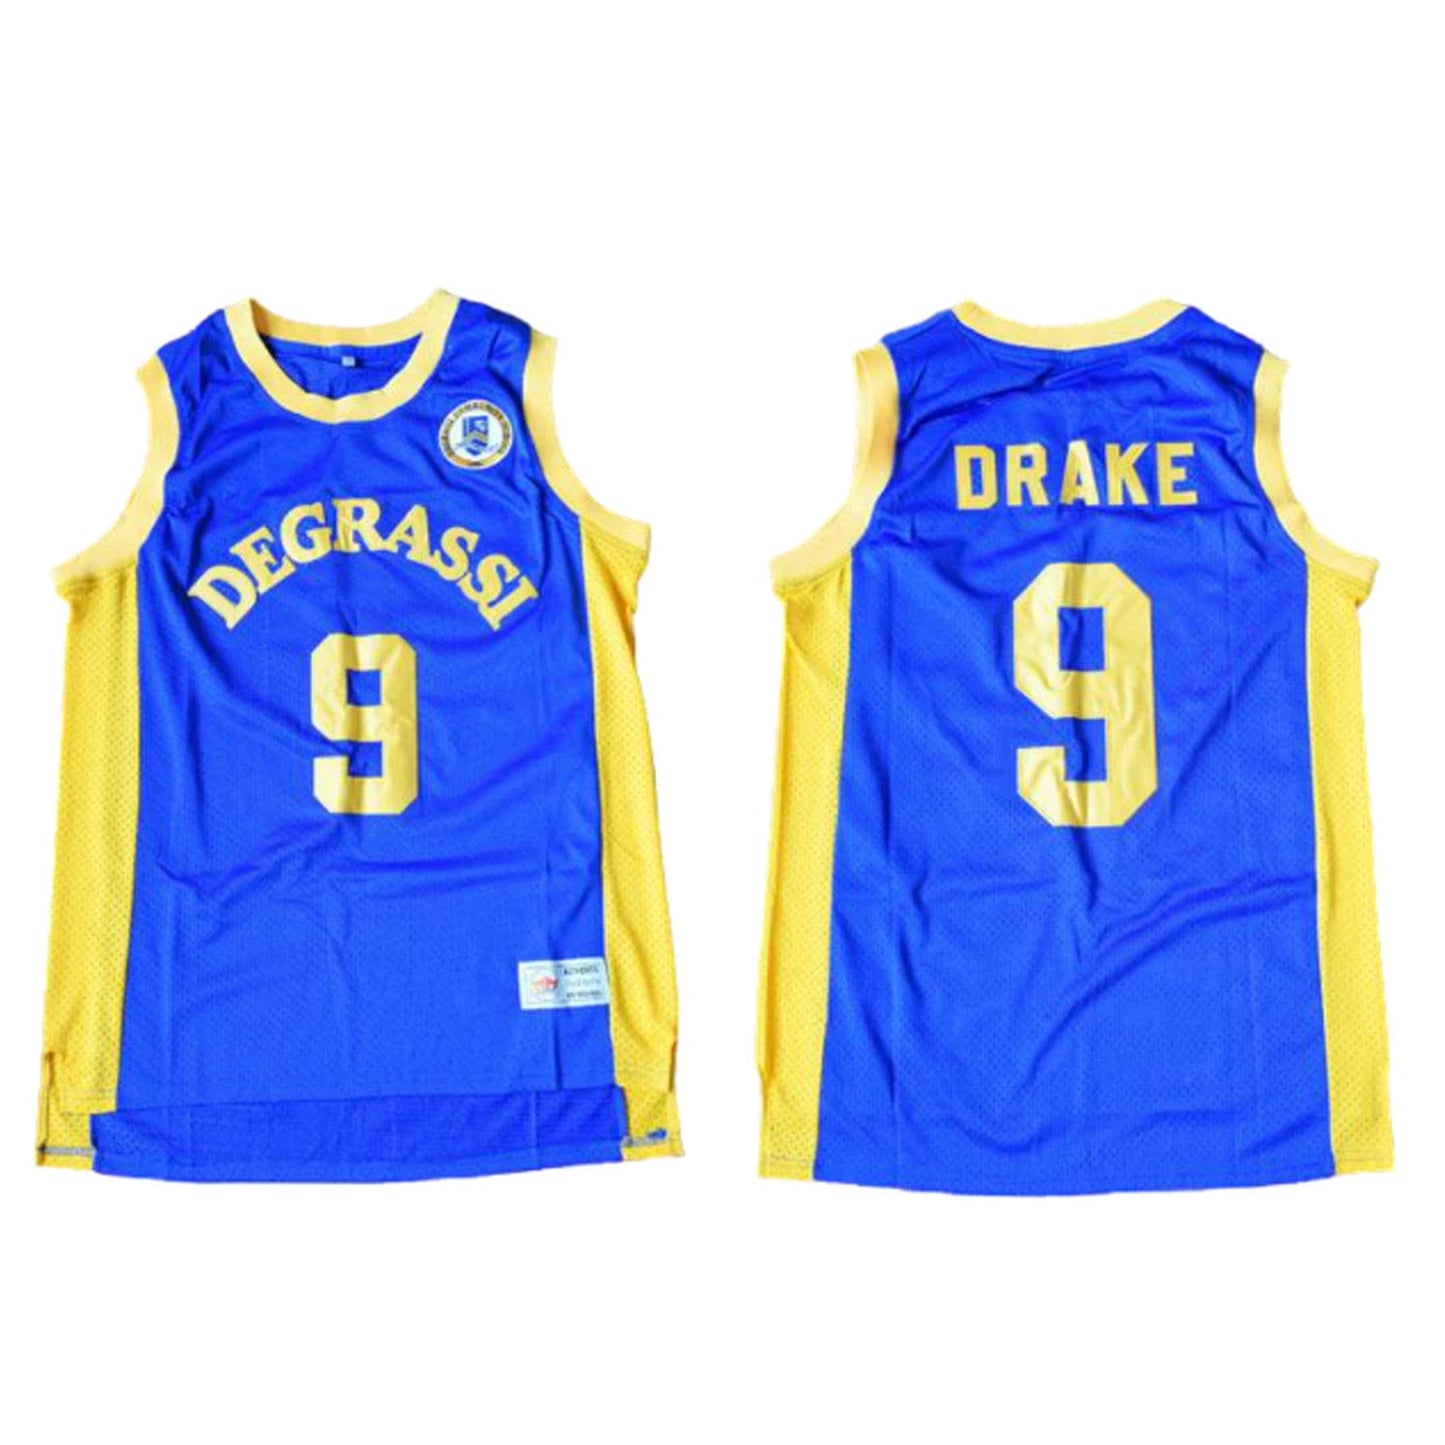 Degrassi 'Drake' 9 Jersey